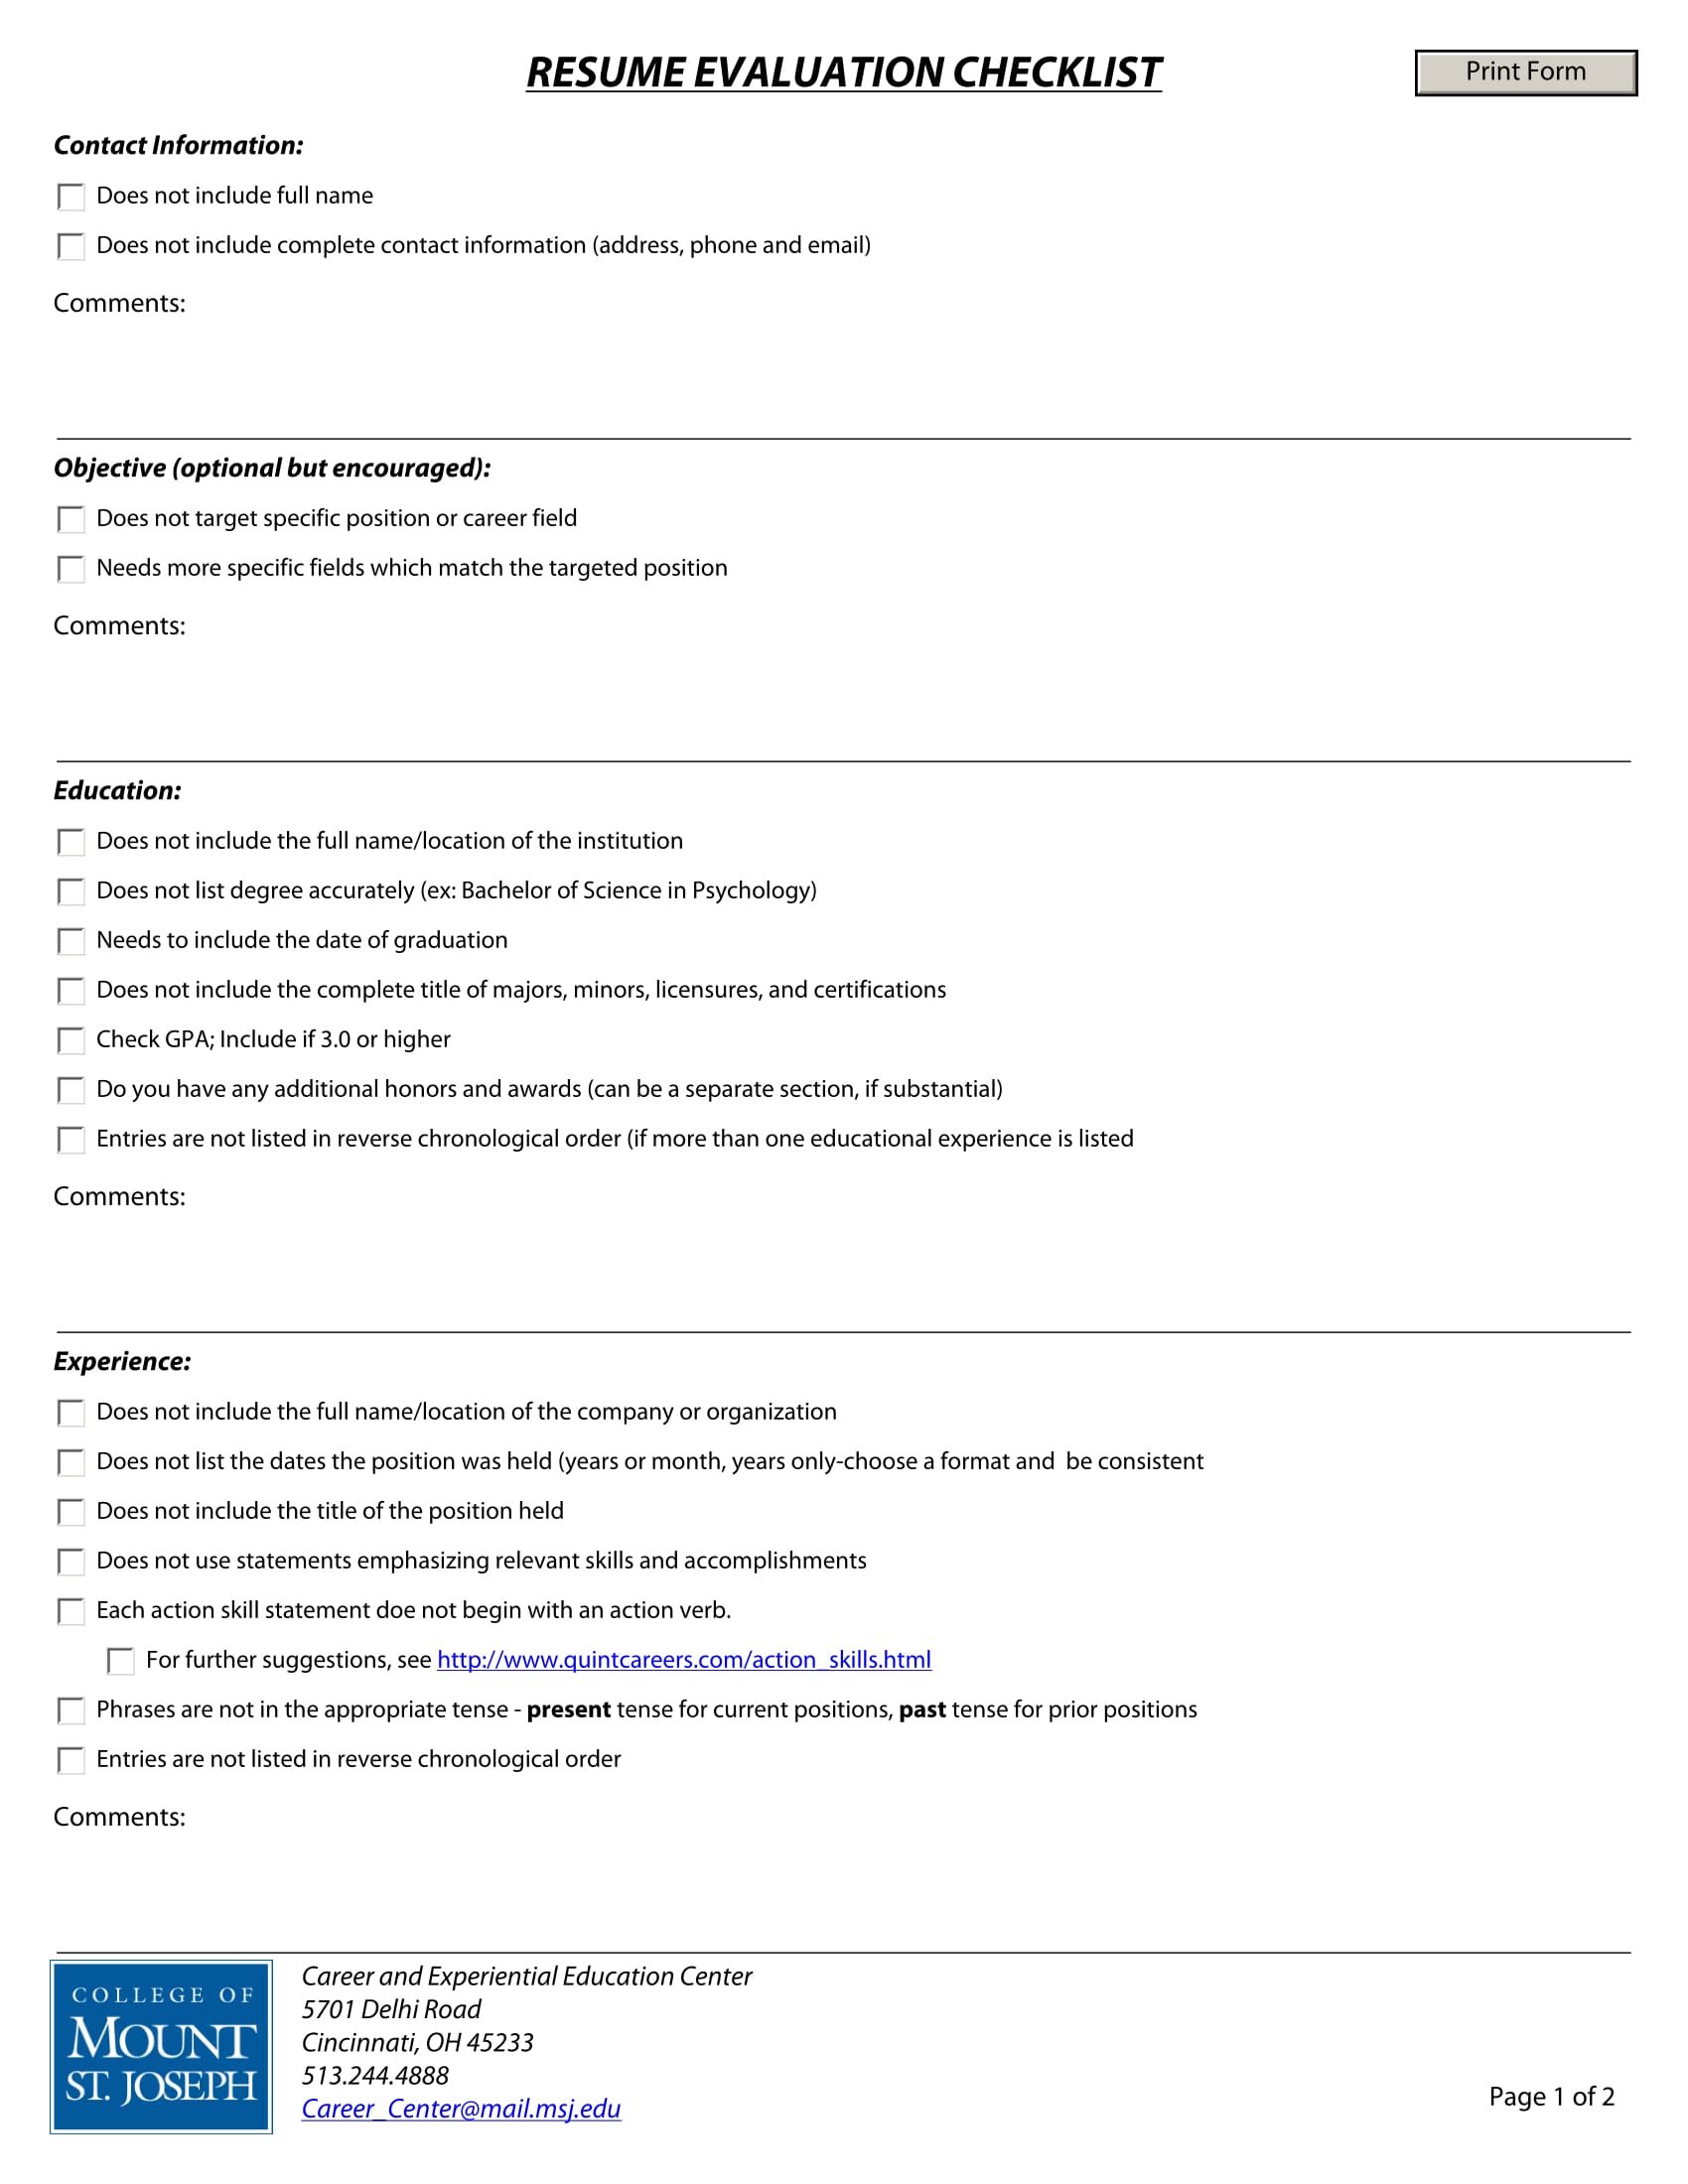 resume evaluation checklist form 1